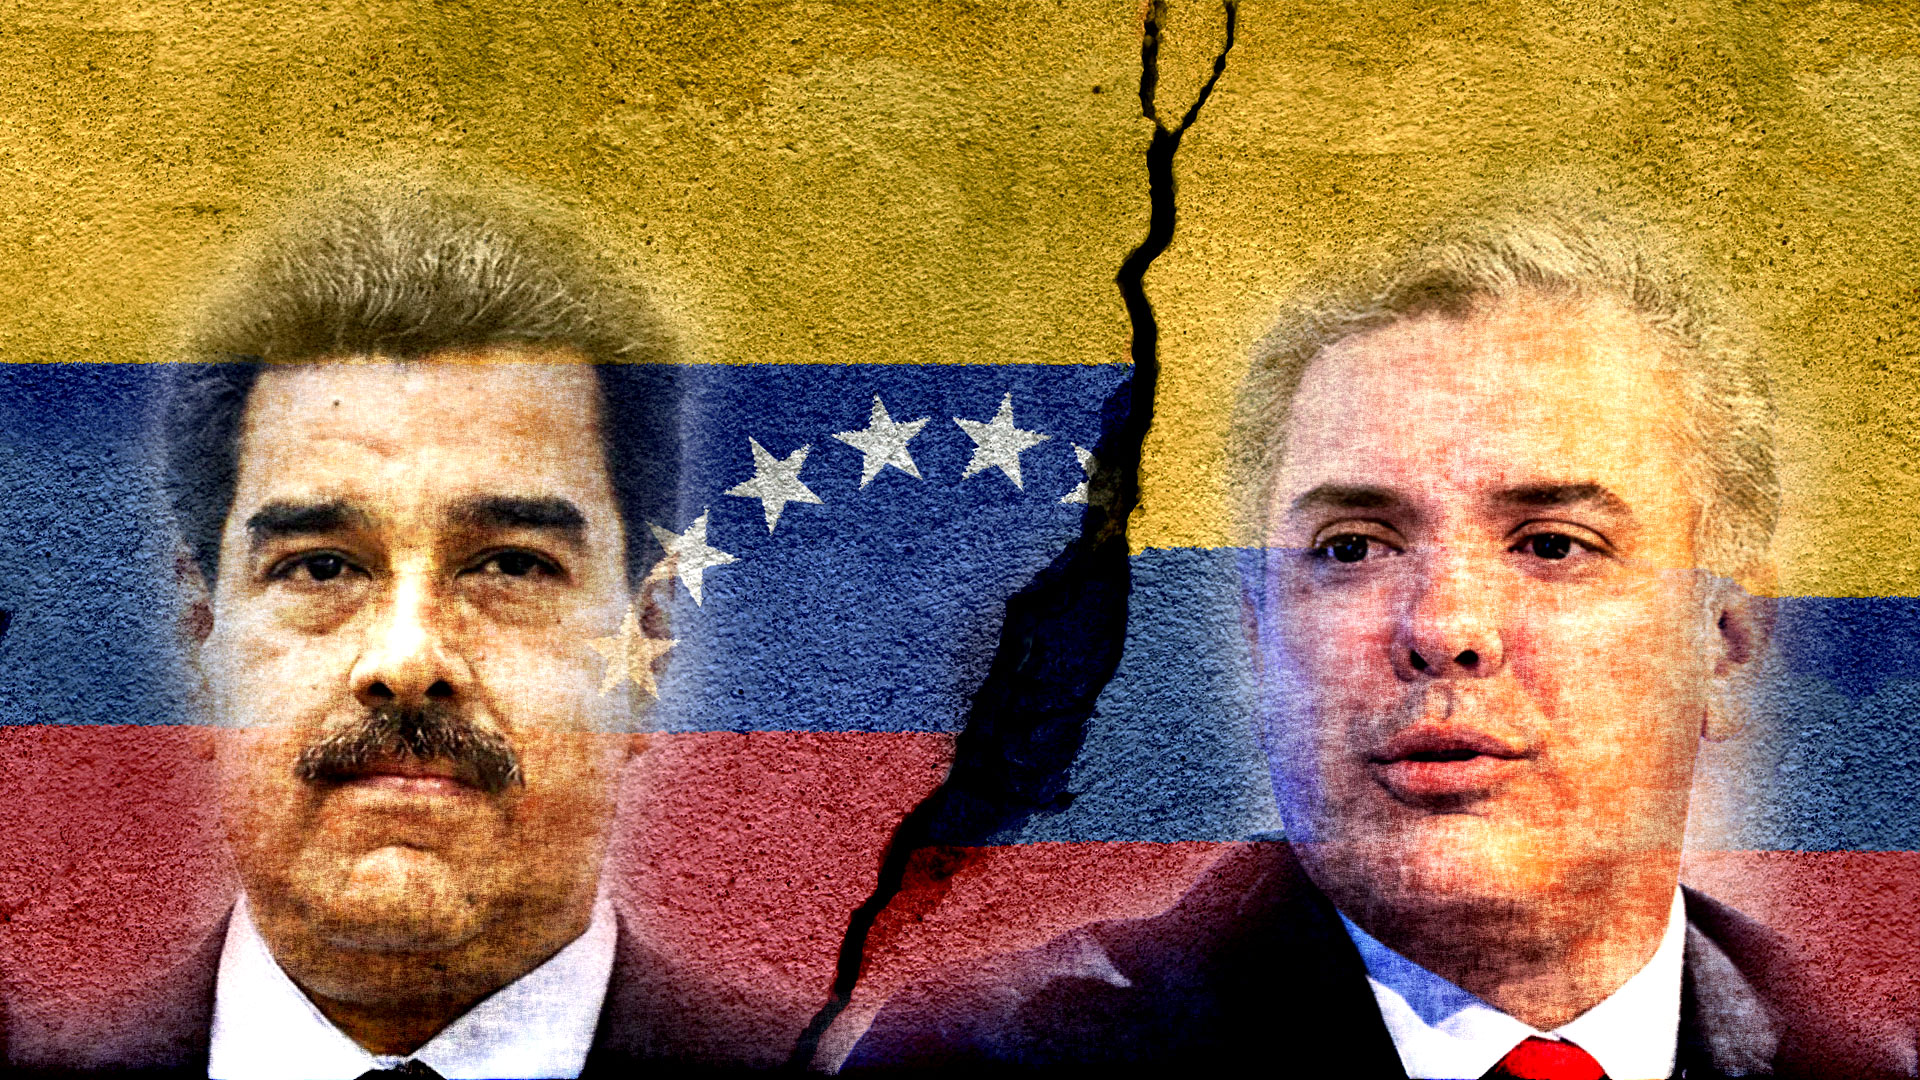 El dictador venezolano Nicolás Maduro y el presidente colombiano Iván Duque. El primero encabeza una escalada en las tensiones entre ambos países